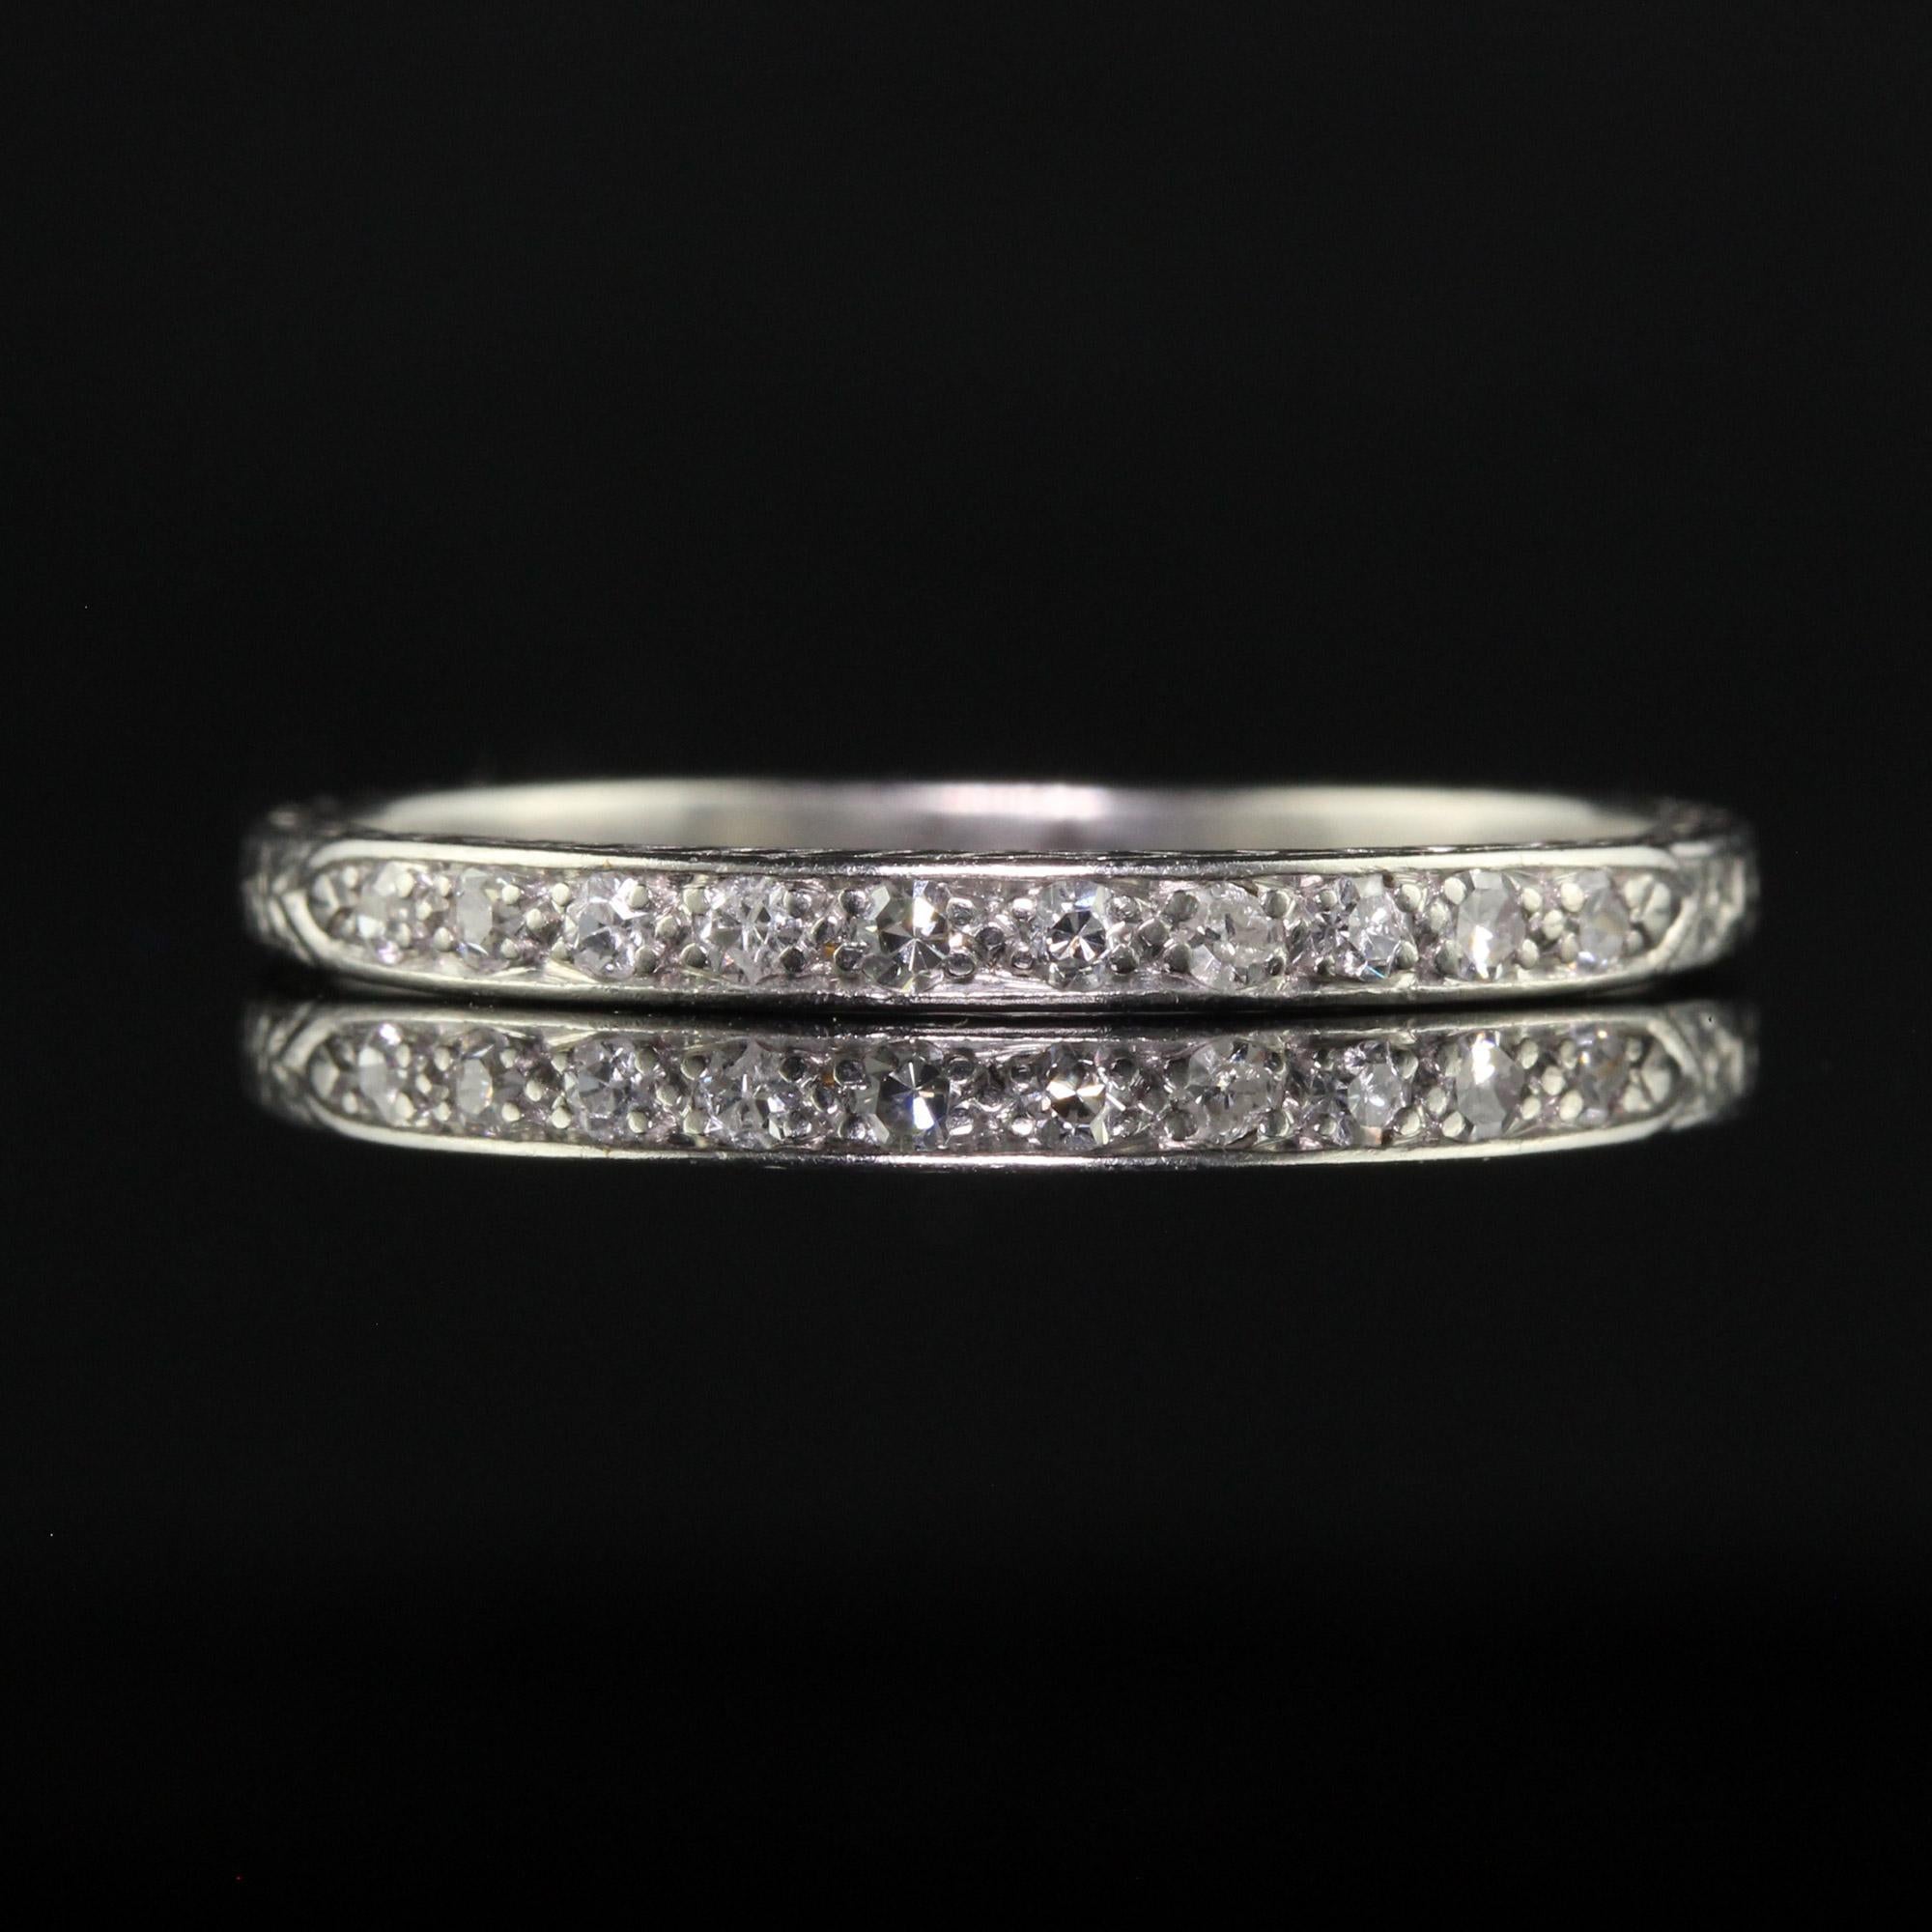 Women's Antique Art Deco Platinum Single Cut Diamond Engraved Wedding Band - Size 8 1/4 For Sale